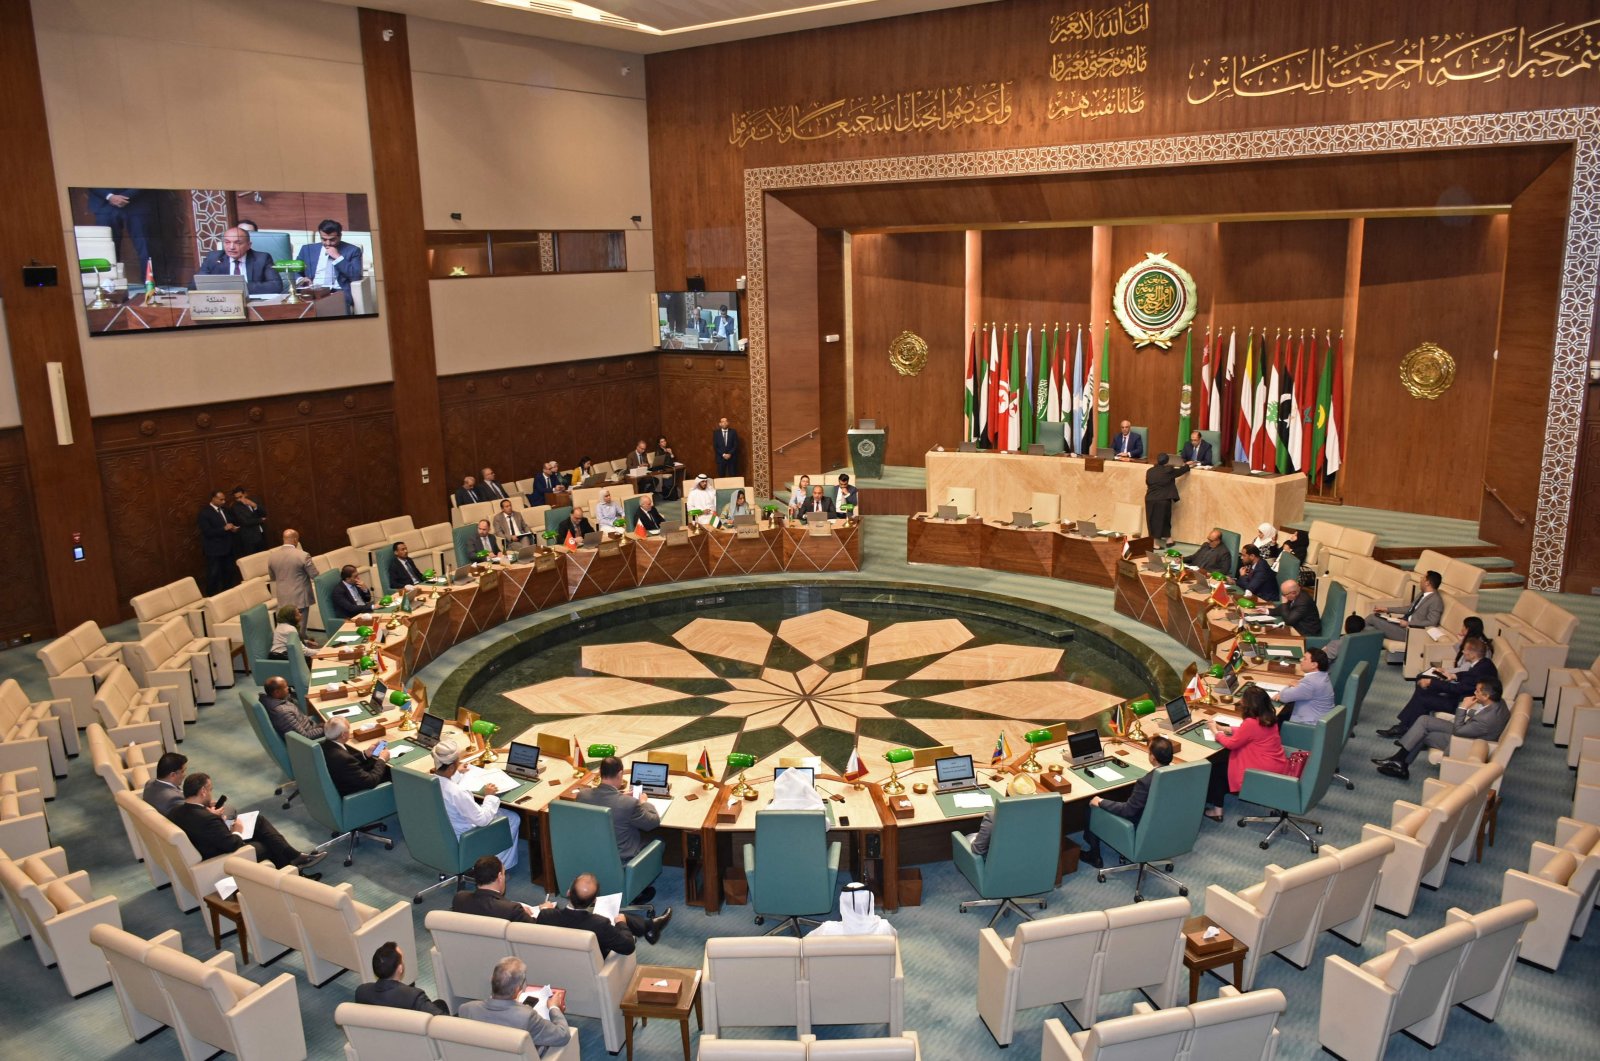 ‘Suriah tidak dapat kembali ke Liga Arab tanpa solusi politik’